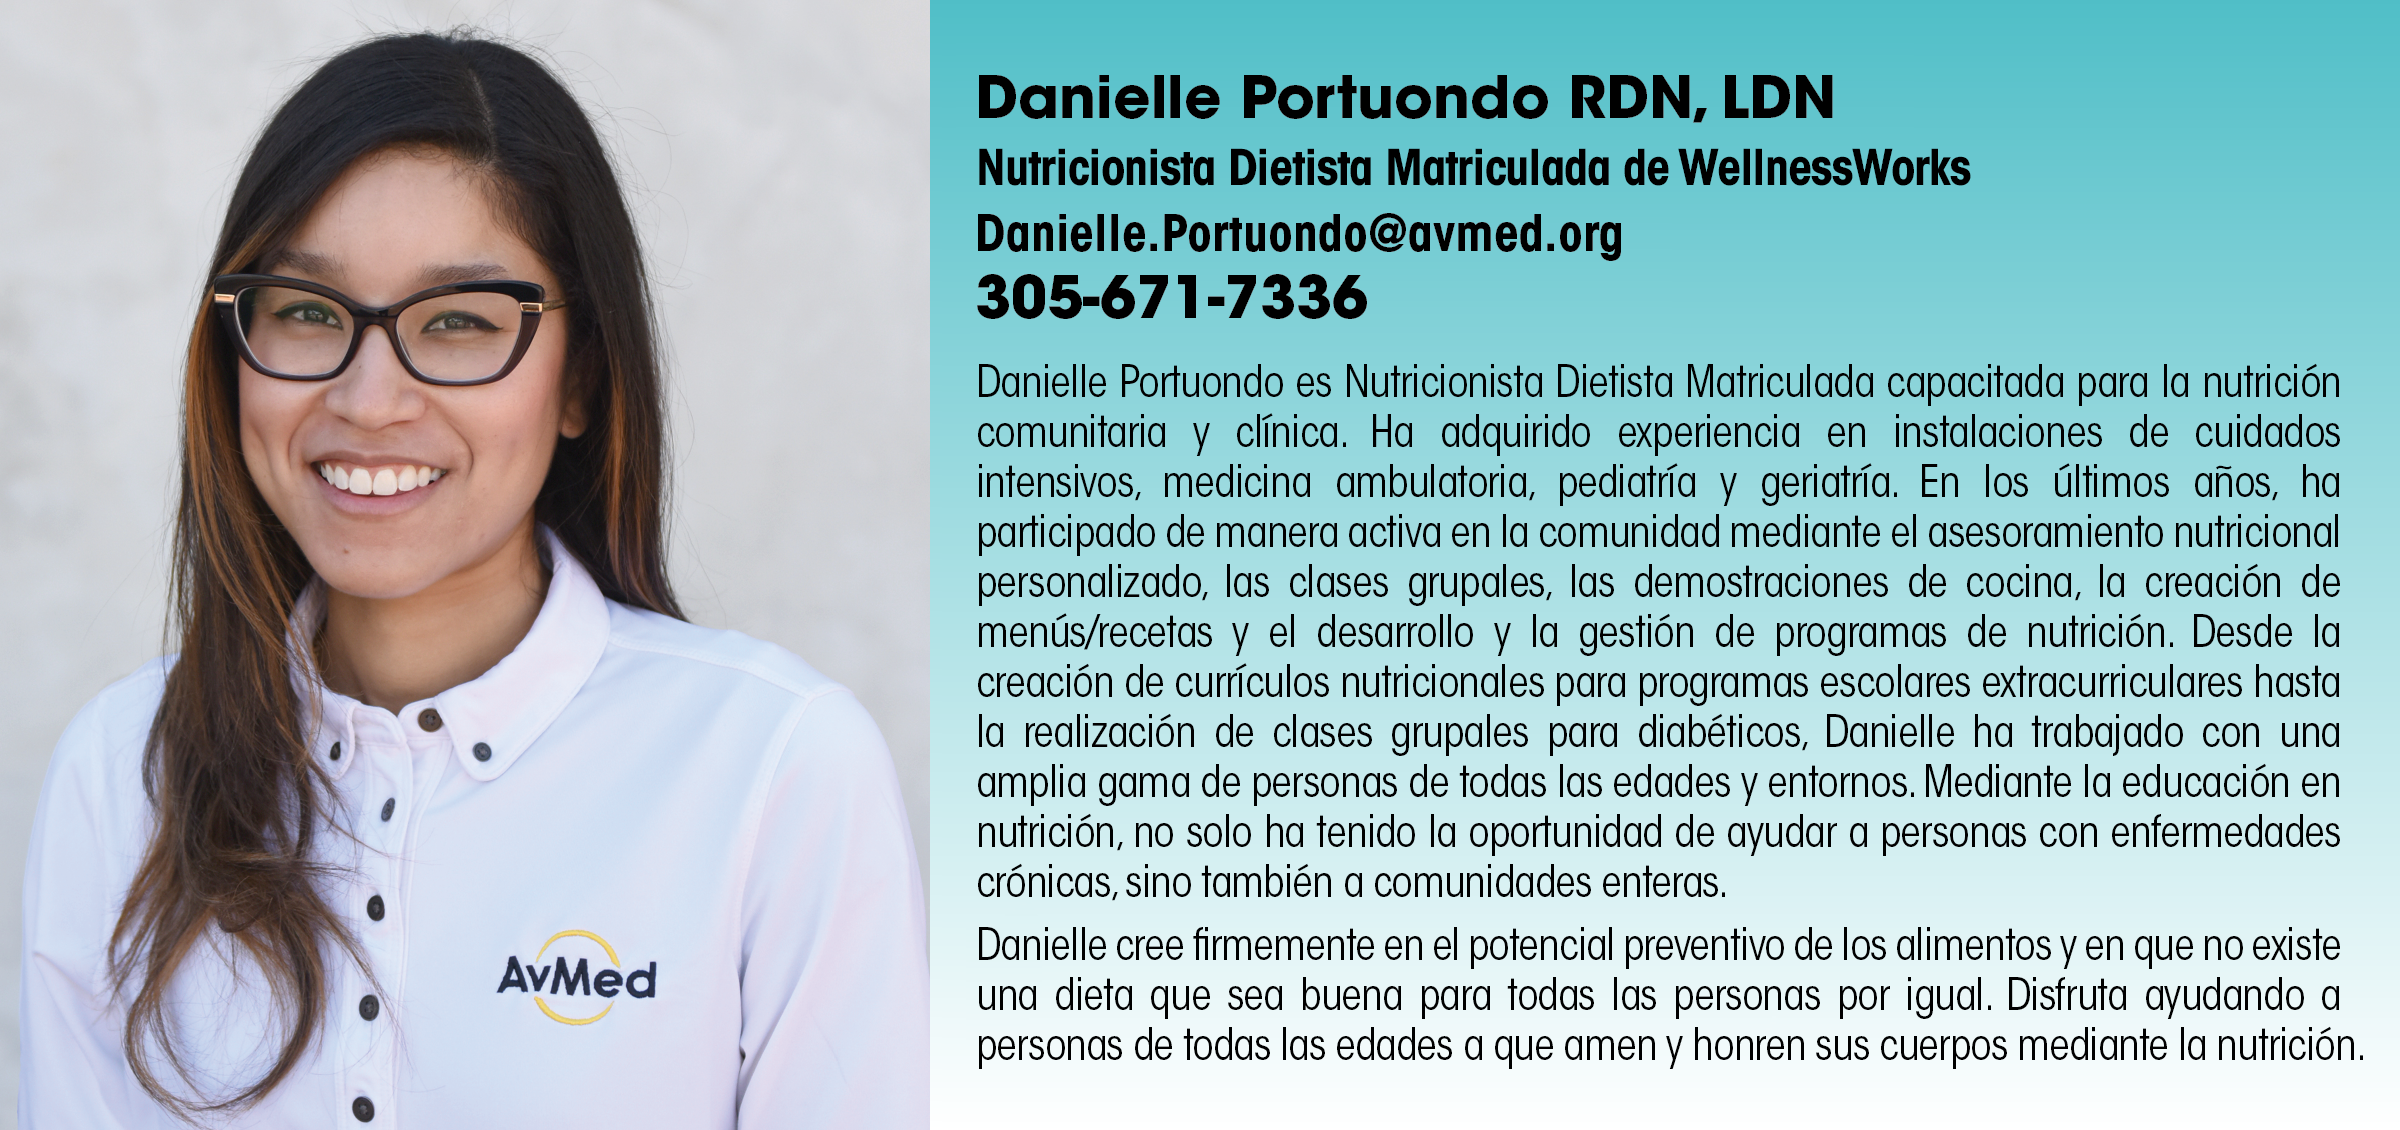 Danielle Portuondo RDM, LDN